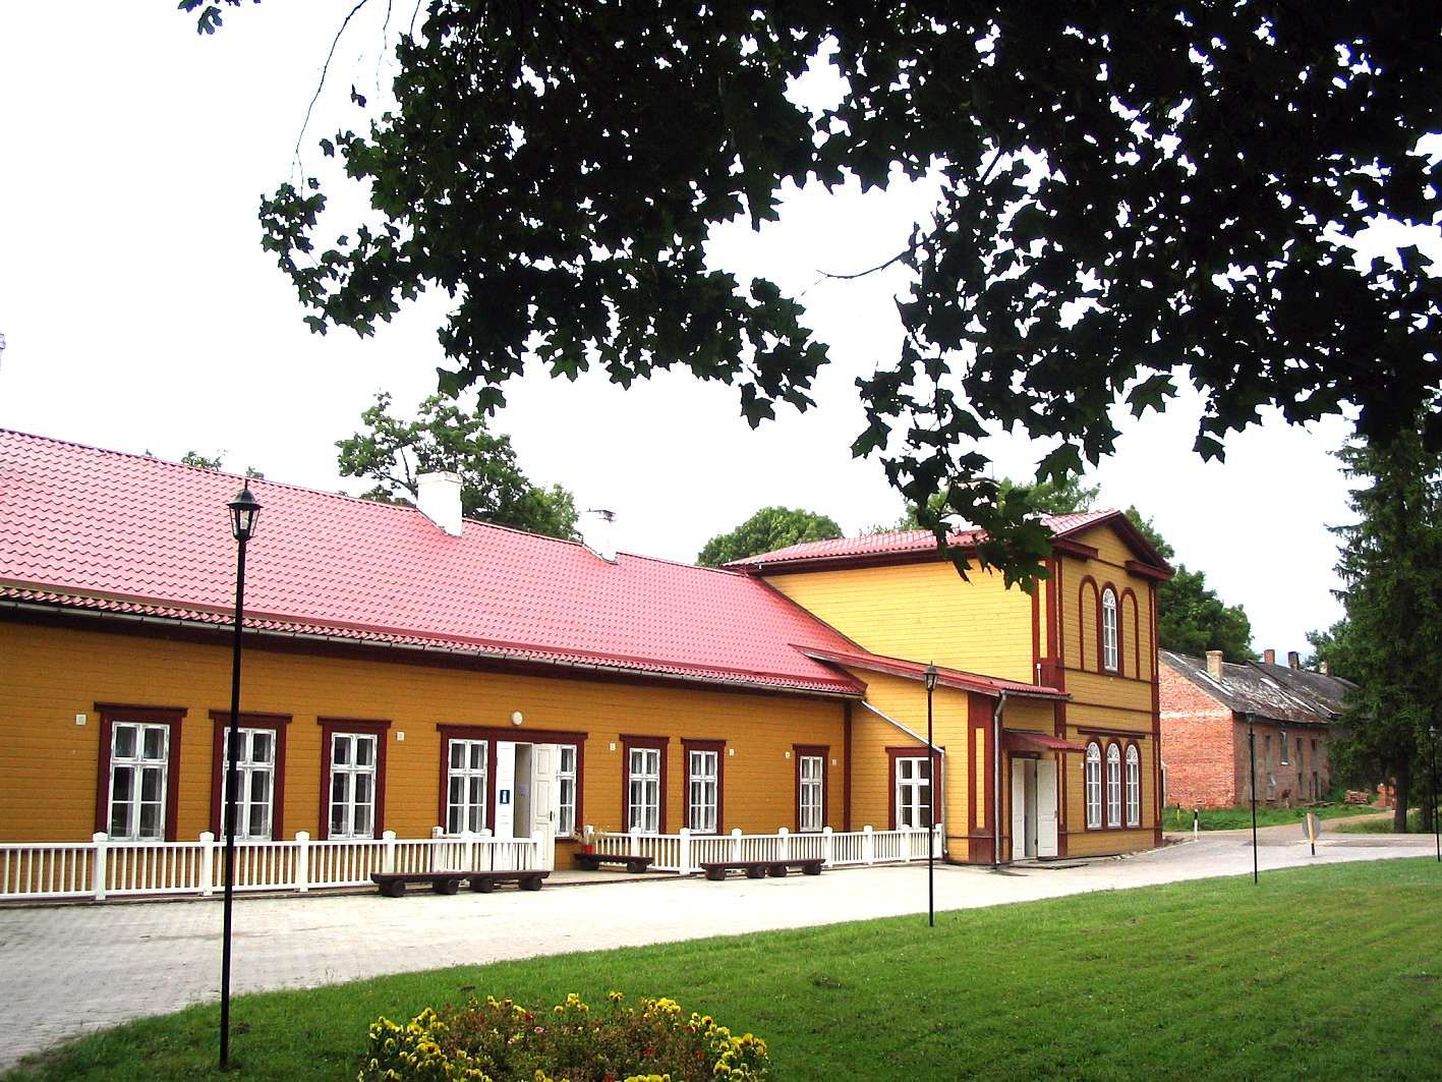 Palupera põhikool, mis asub 19. sajandi mõisahoones.